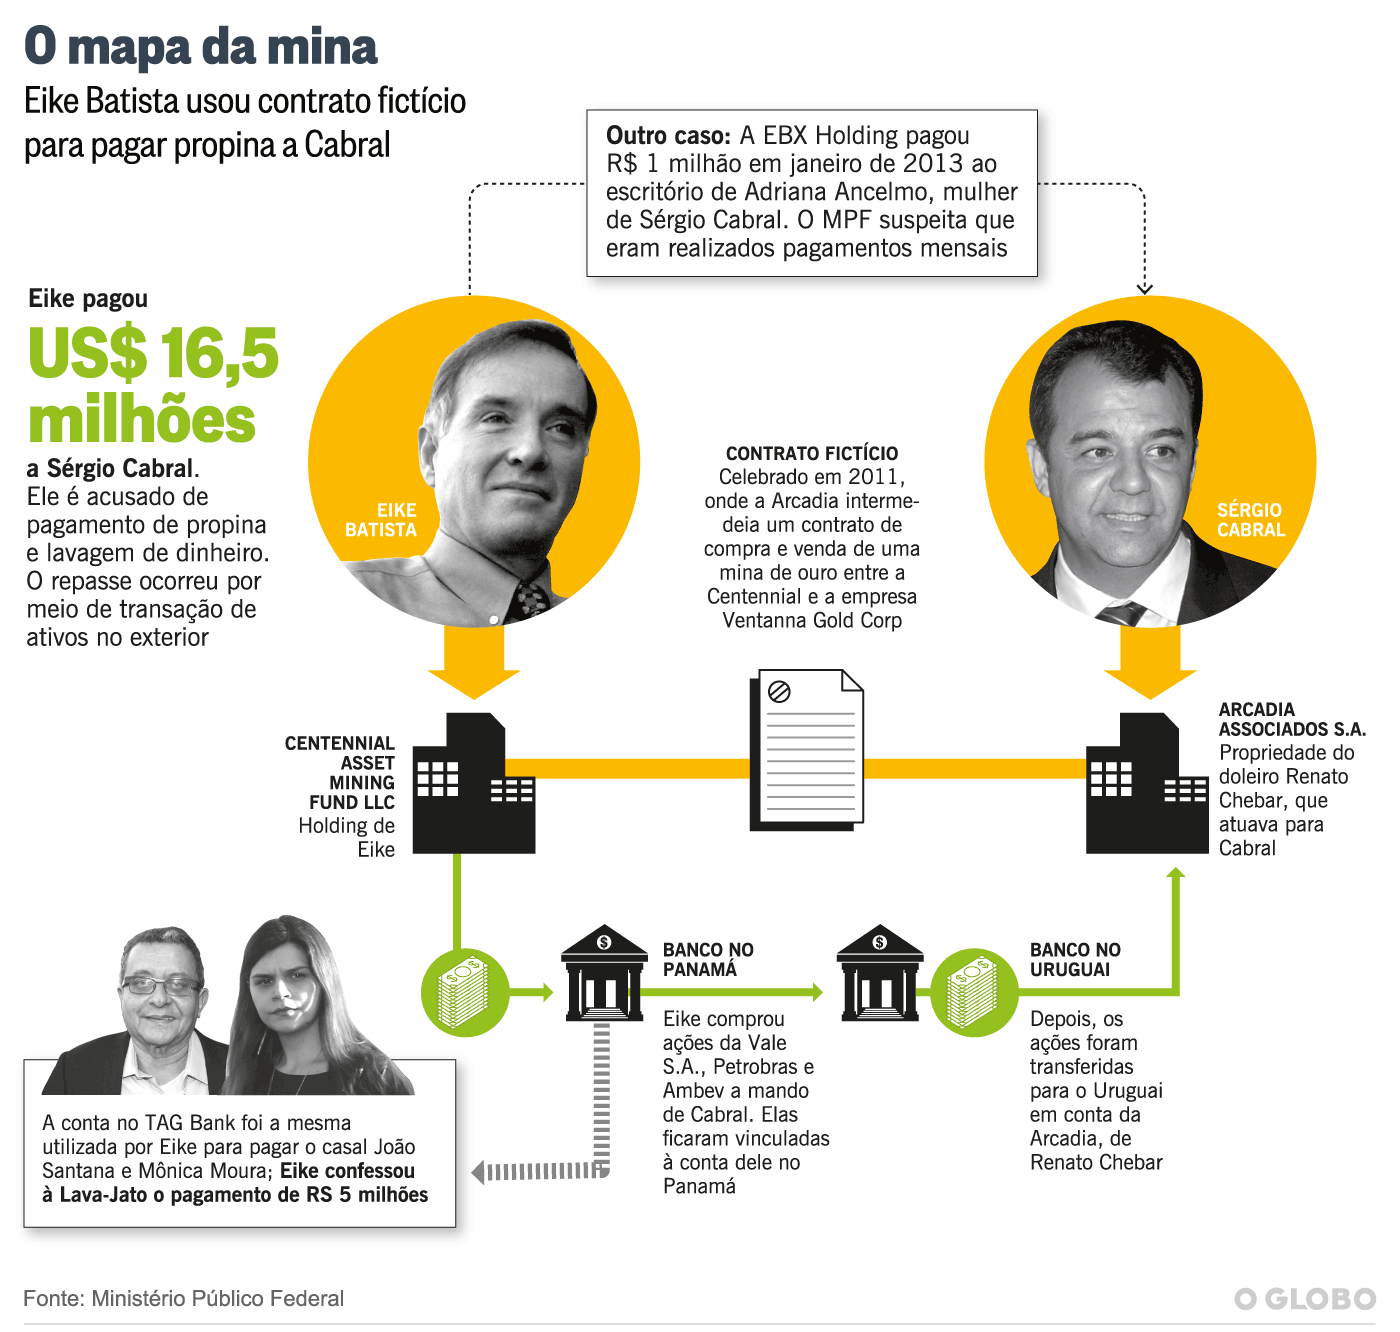 Eike: O mapa da mina - O Globo / 28.01.2017